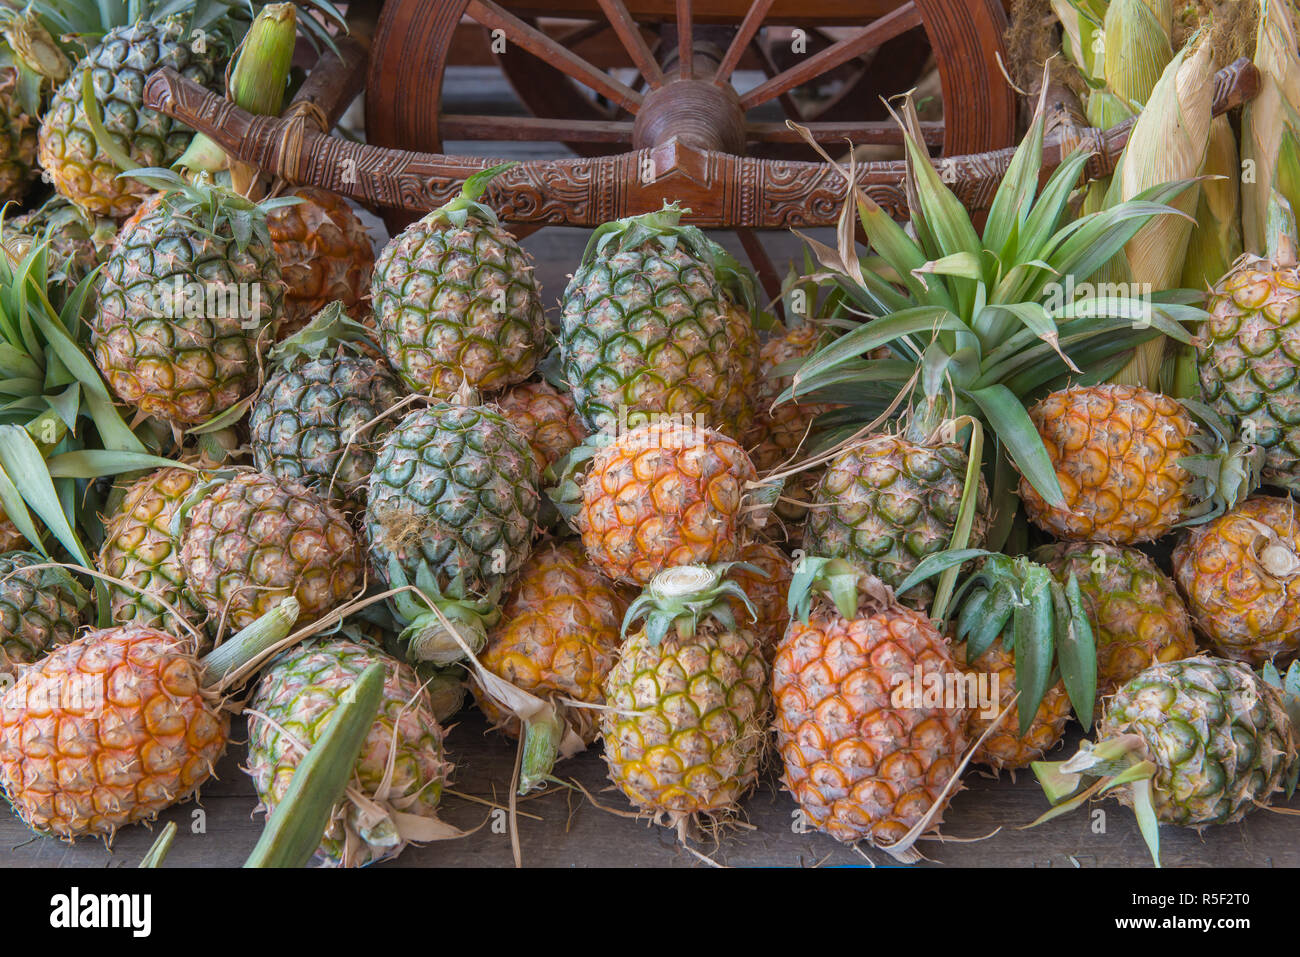 De fruits frais ananas sur le marché Banque D'Images